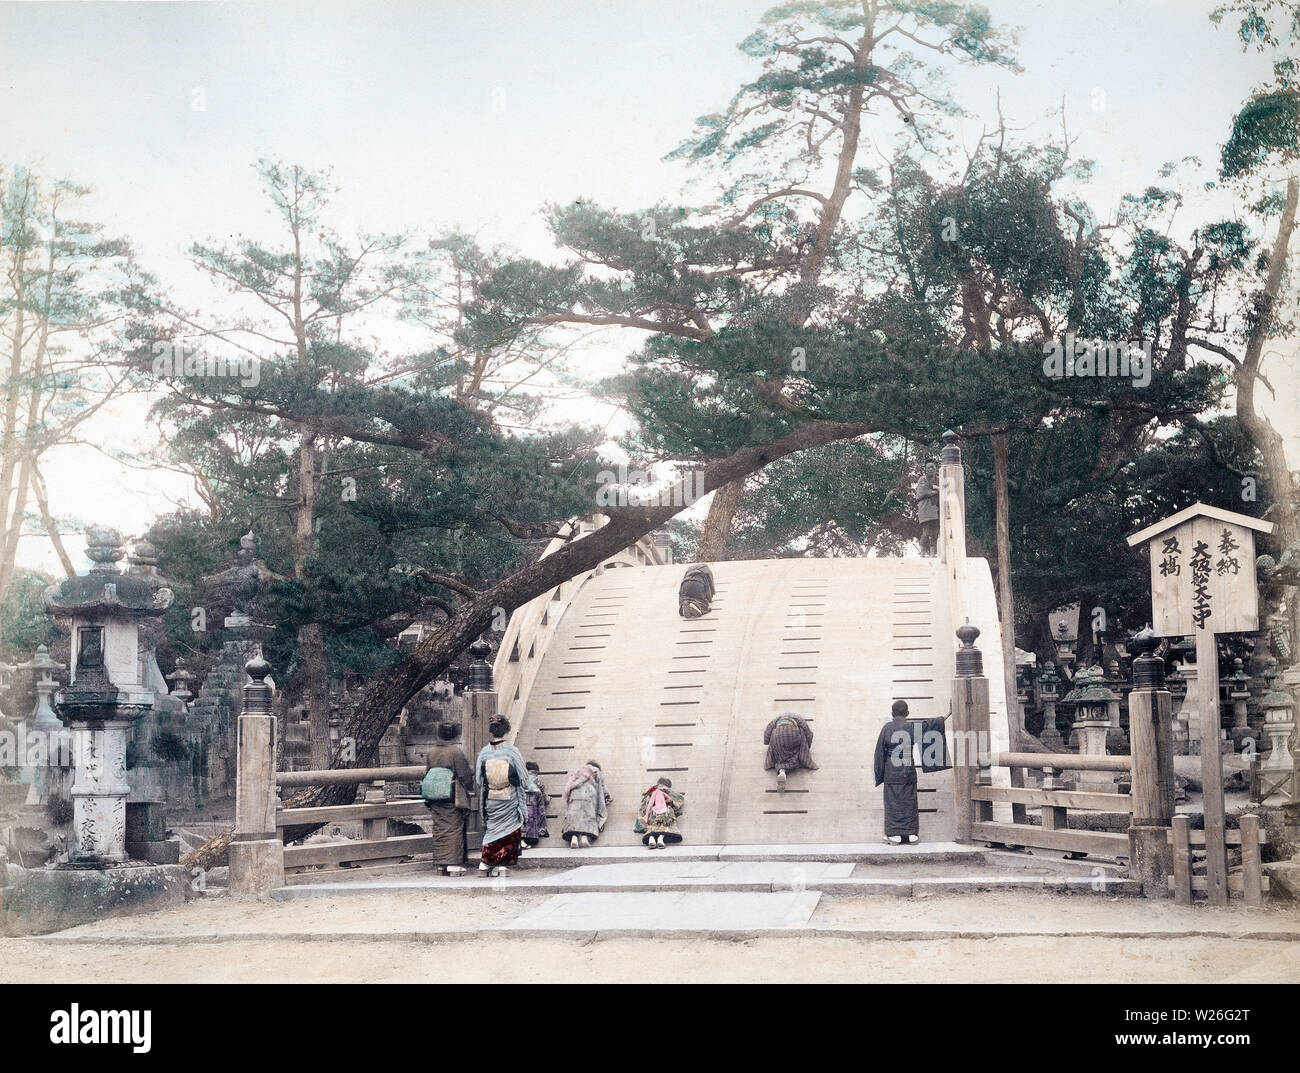 [ 1880 Giappone - Ponte Soribashi al Santuario Sumiyoshi in Osaka ] - Ponte Soribashi al Santuario Sumiyoshi a Osaka. Il ponte è anche noto come Taikobashi (Tamburo ponte). Xix secolo albume vintage fotografia. Foto Stock